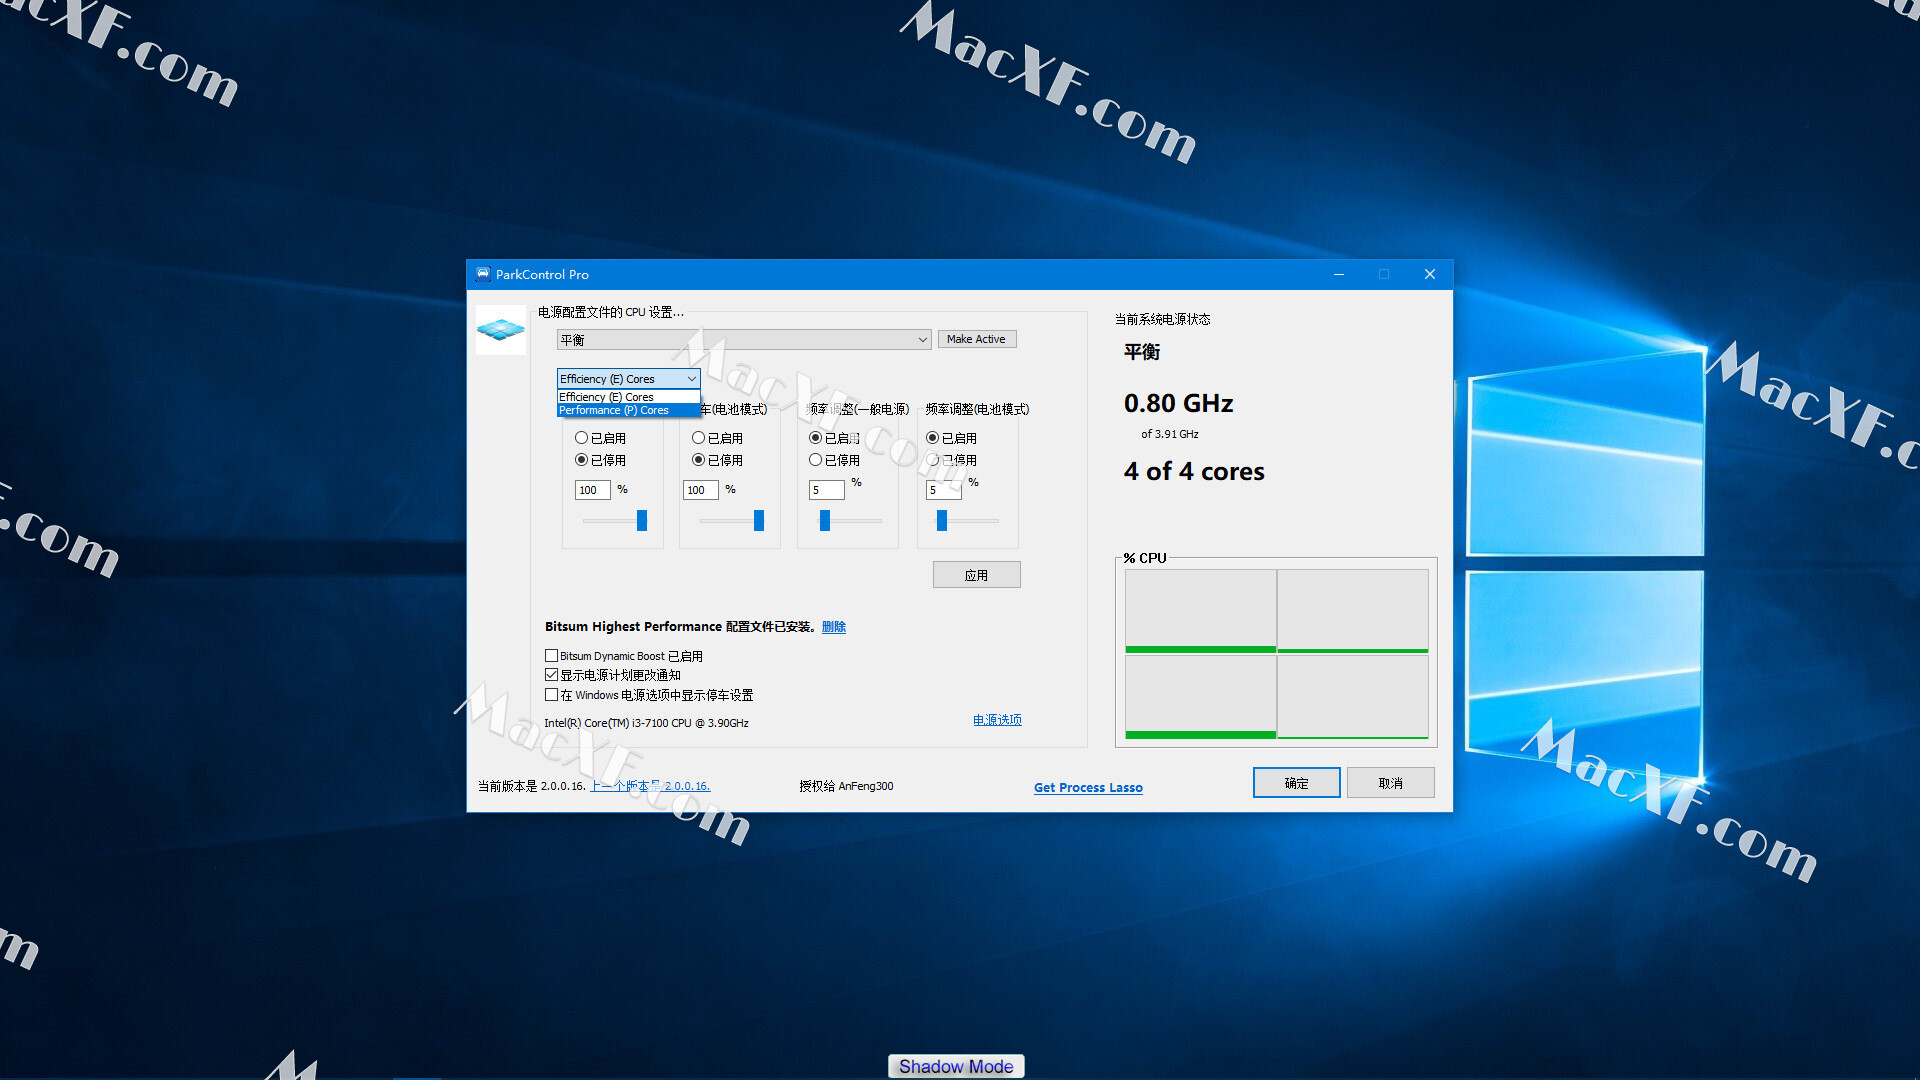 Bitsum ParkControl Pro 4.2.1.10 download the new version